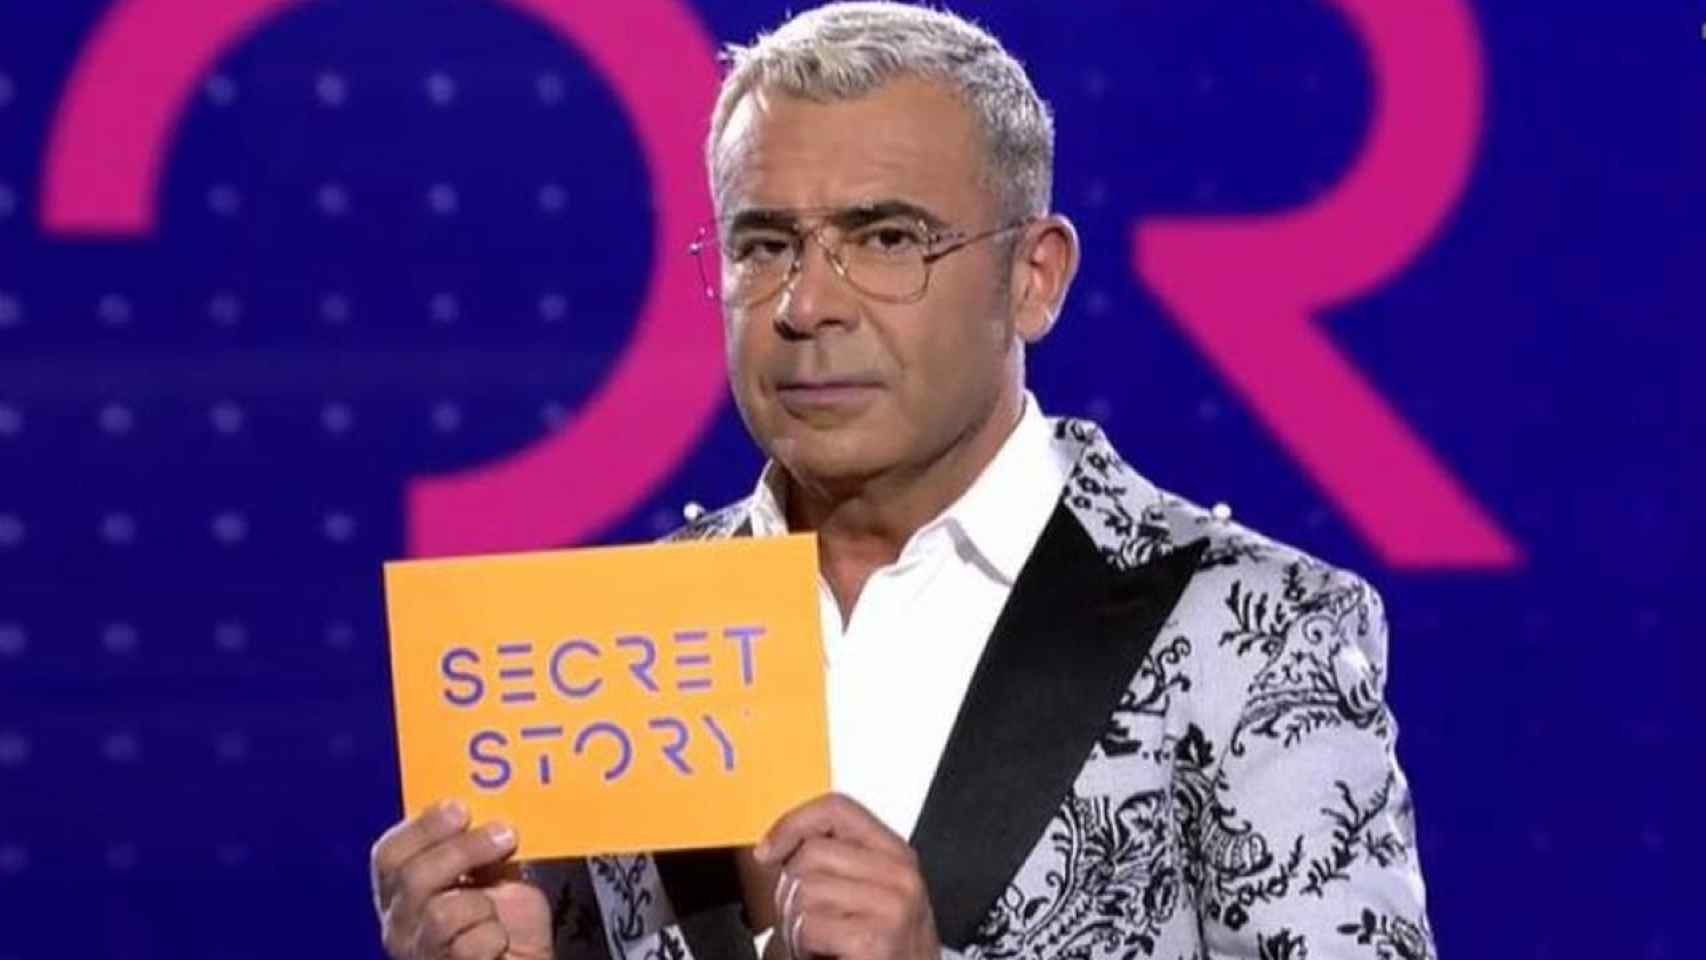 Por qué Jorge Javier Vázquez no presenta esta noche 'Secret Story' y le sustituye Carlos Sobera